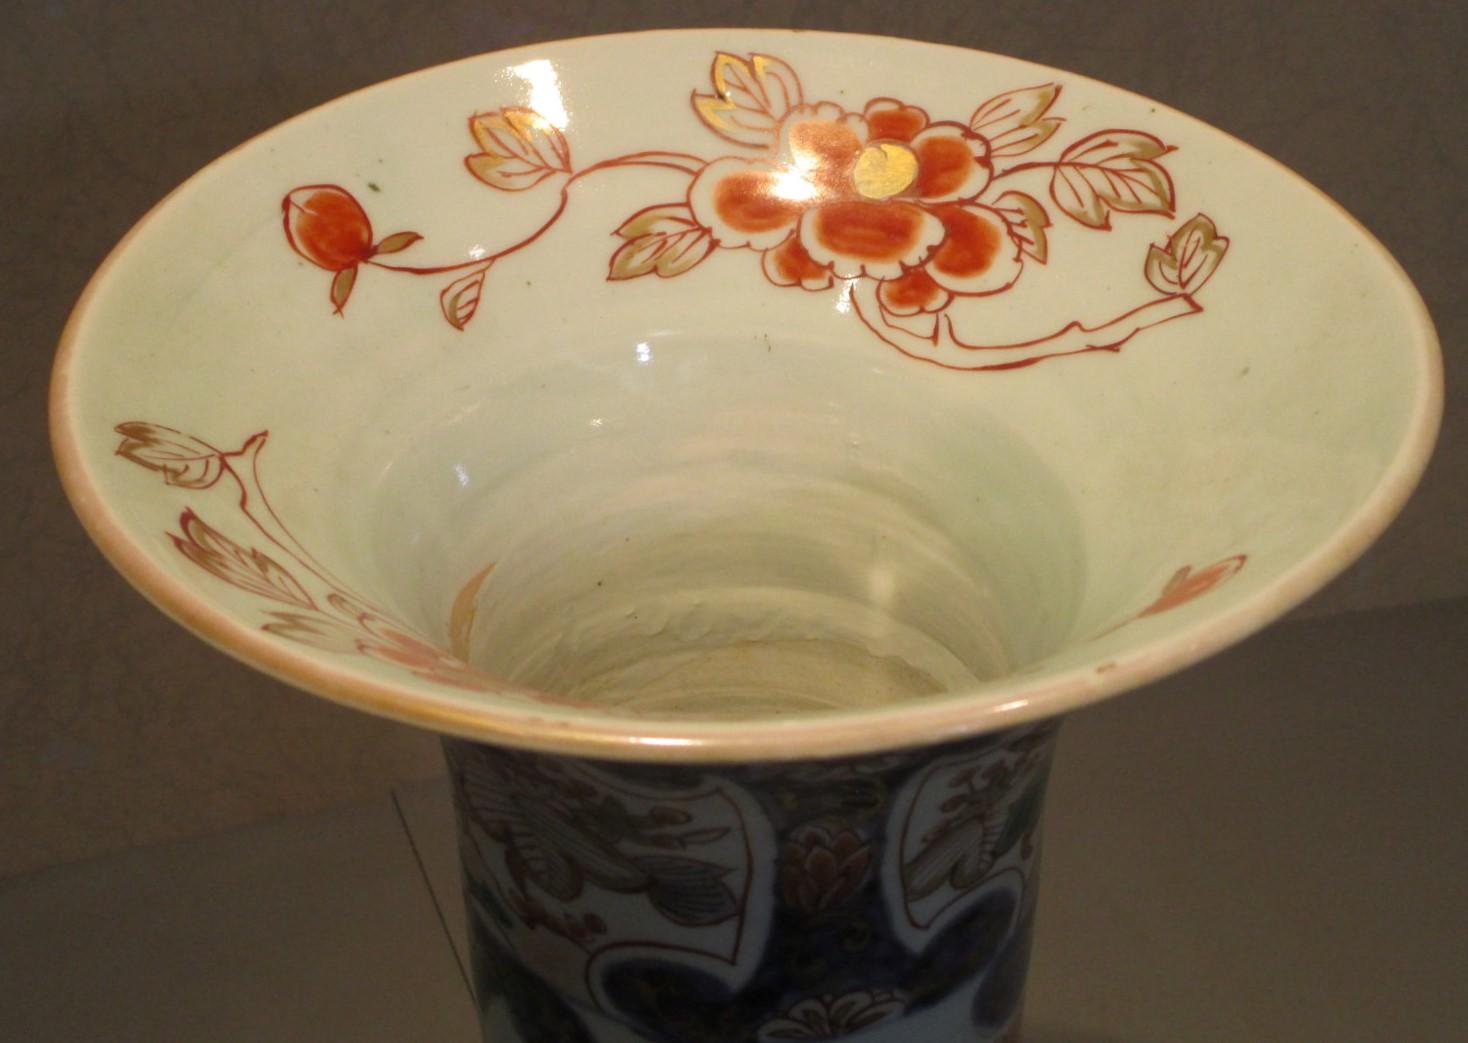 Hand-Painted Japanese 18th Century Edo Period Imari Porcelain Ceremonial Vase, circa 1740